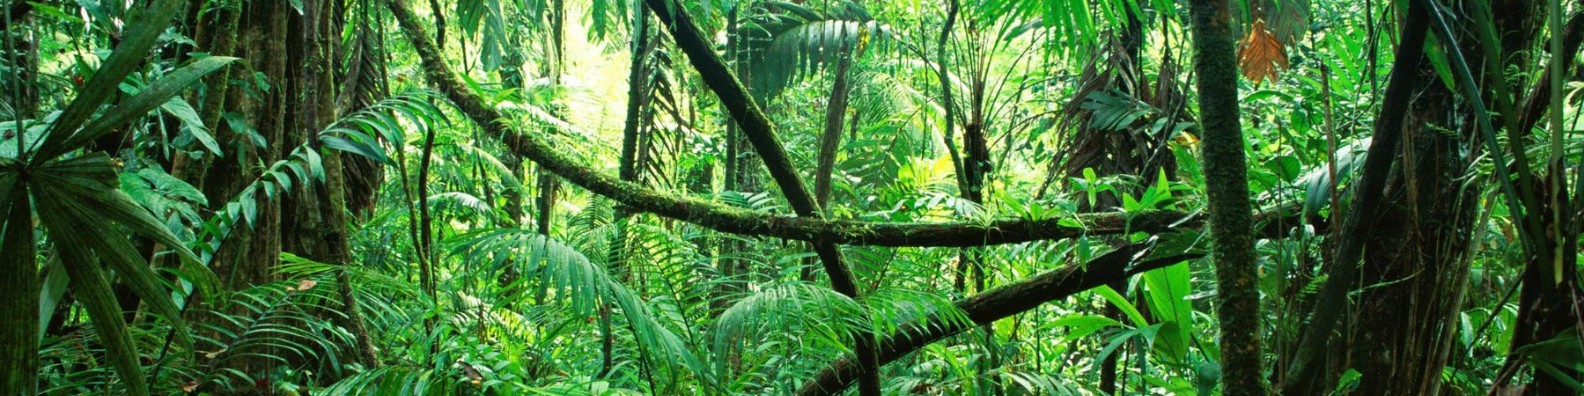 Джунгли внутри тебя. Лианы в джунглях. Тропические лианы. Экваториальный лес. Опасные джунгли.